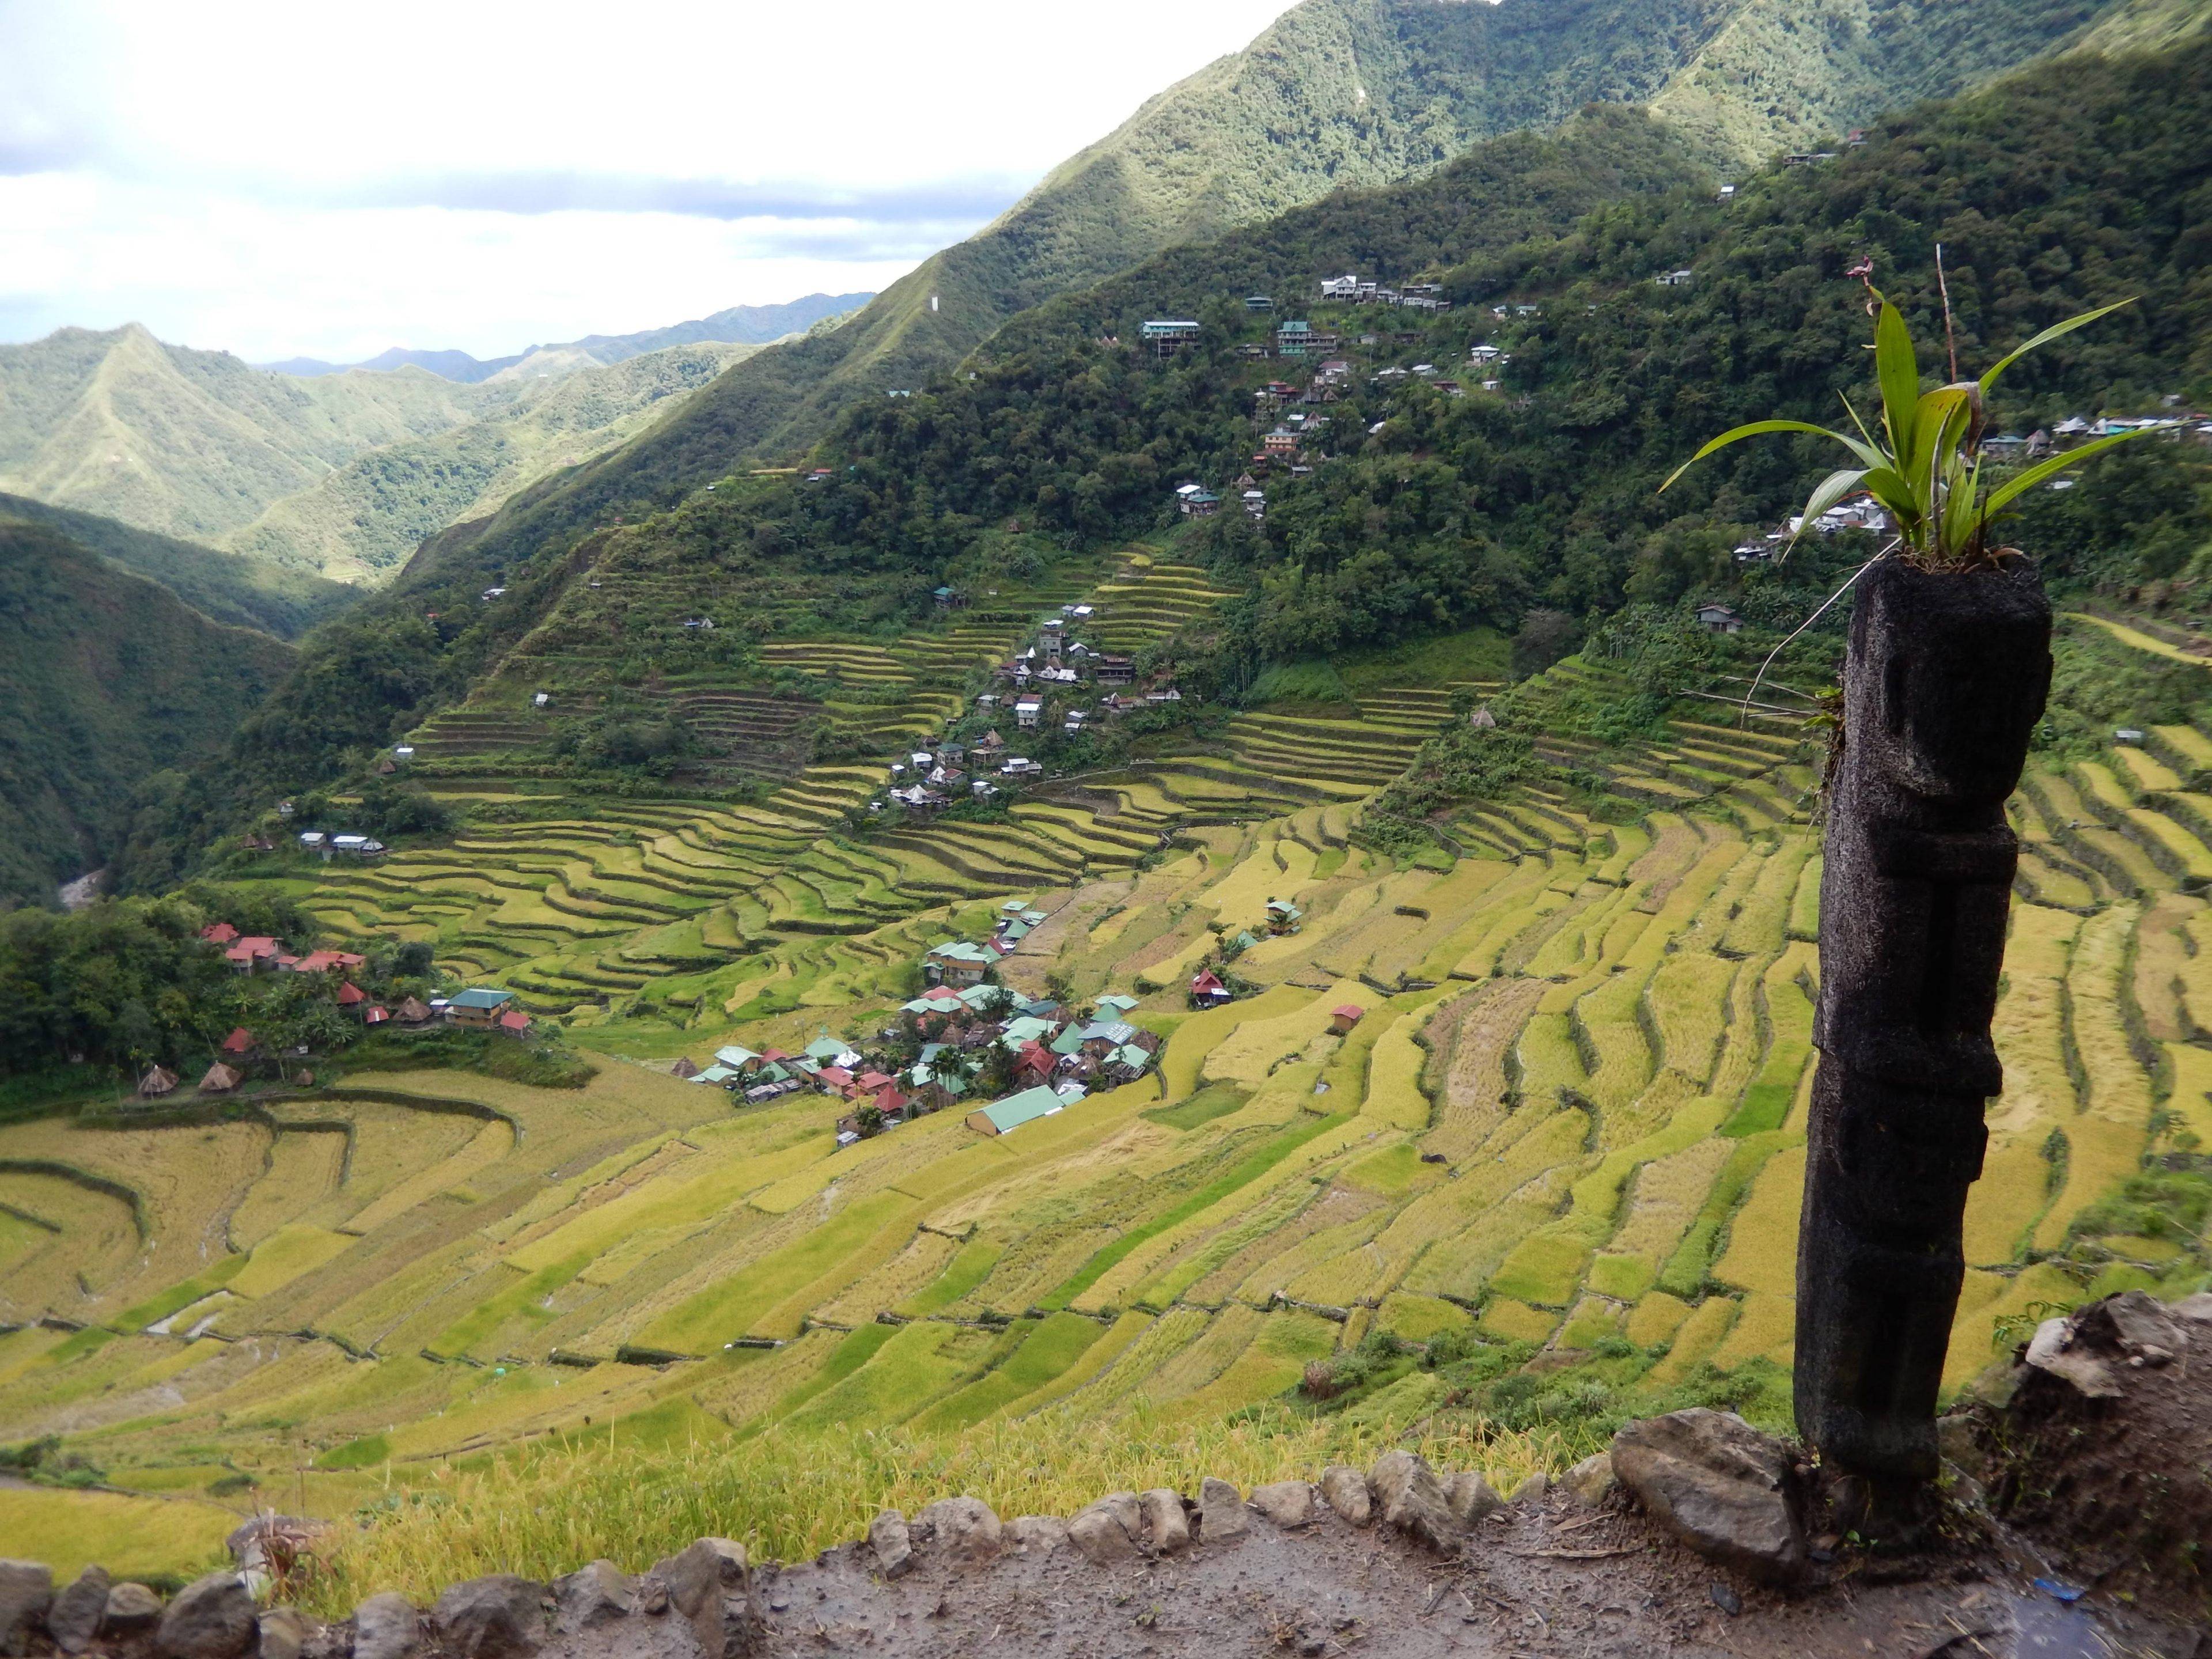 Des rizières en terrasses au joyau de Palawan